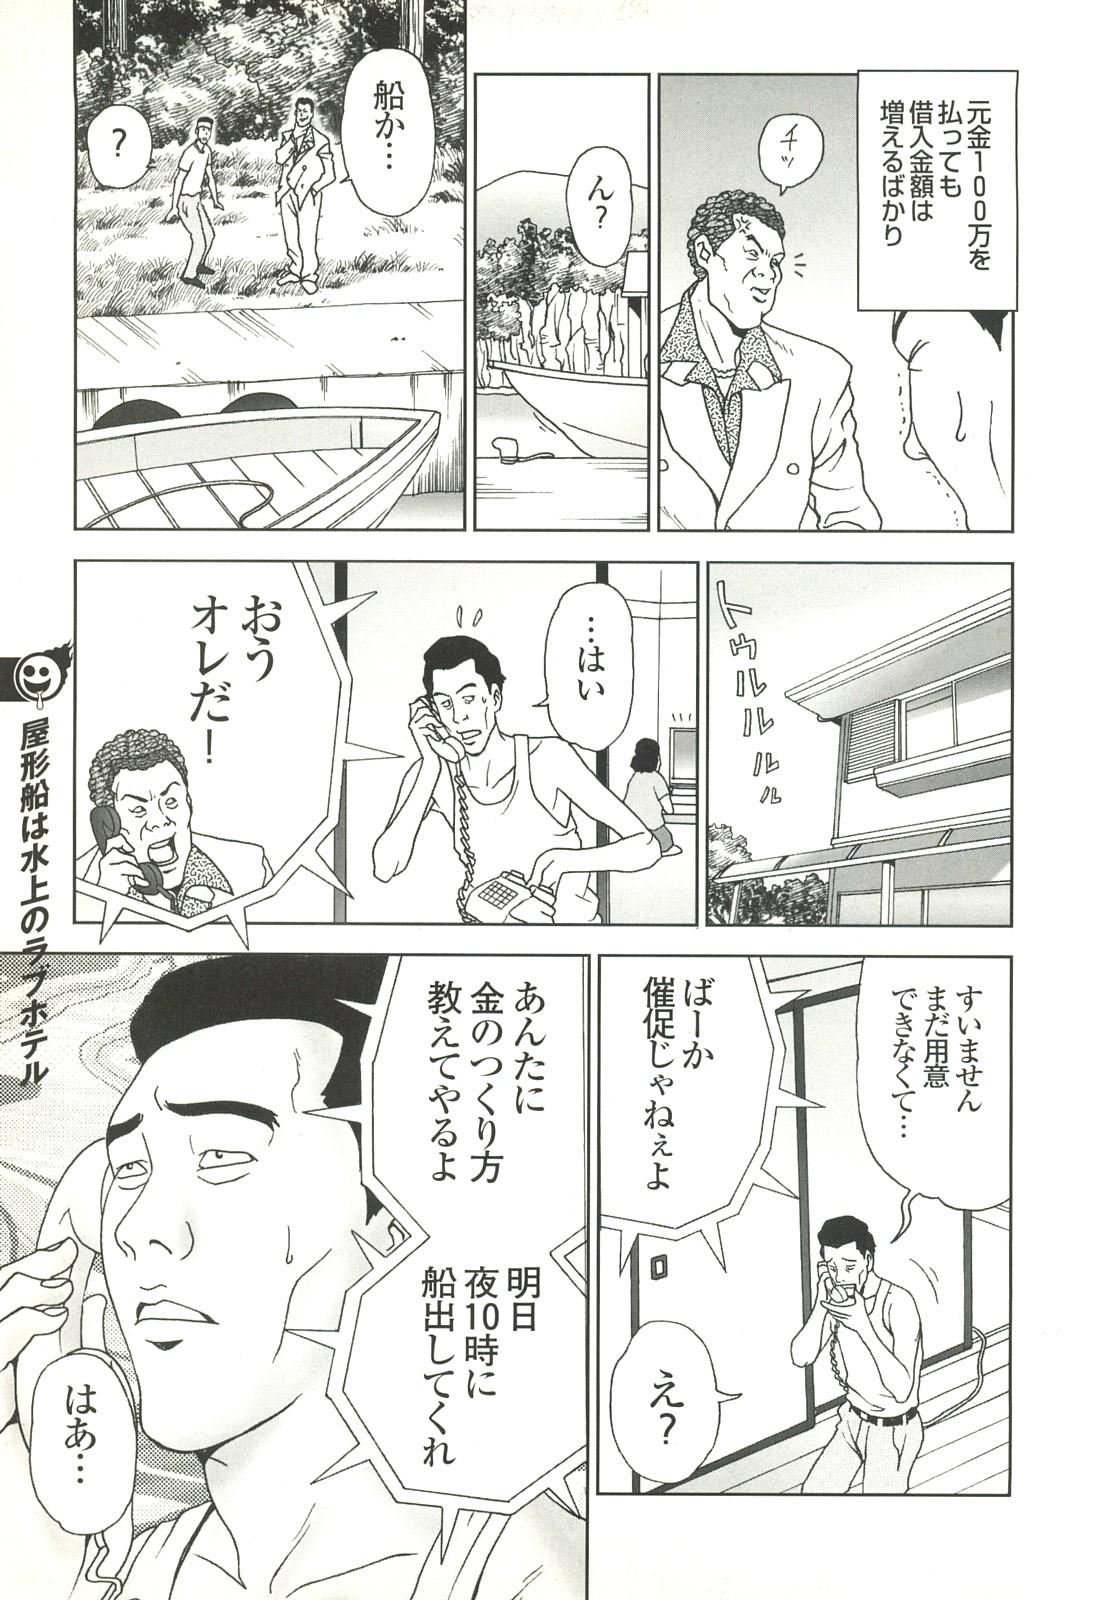 コミック裏モノJAPAN Vol.18 今井のりたつスペシャル号 278